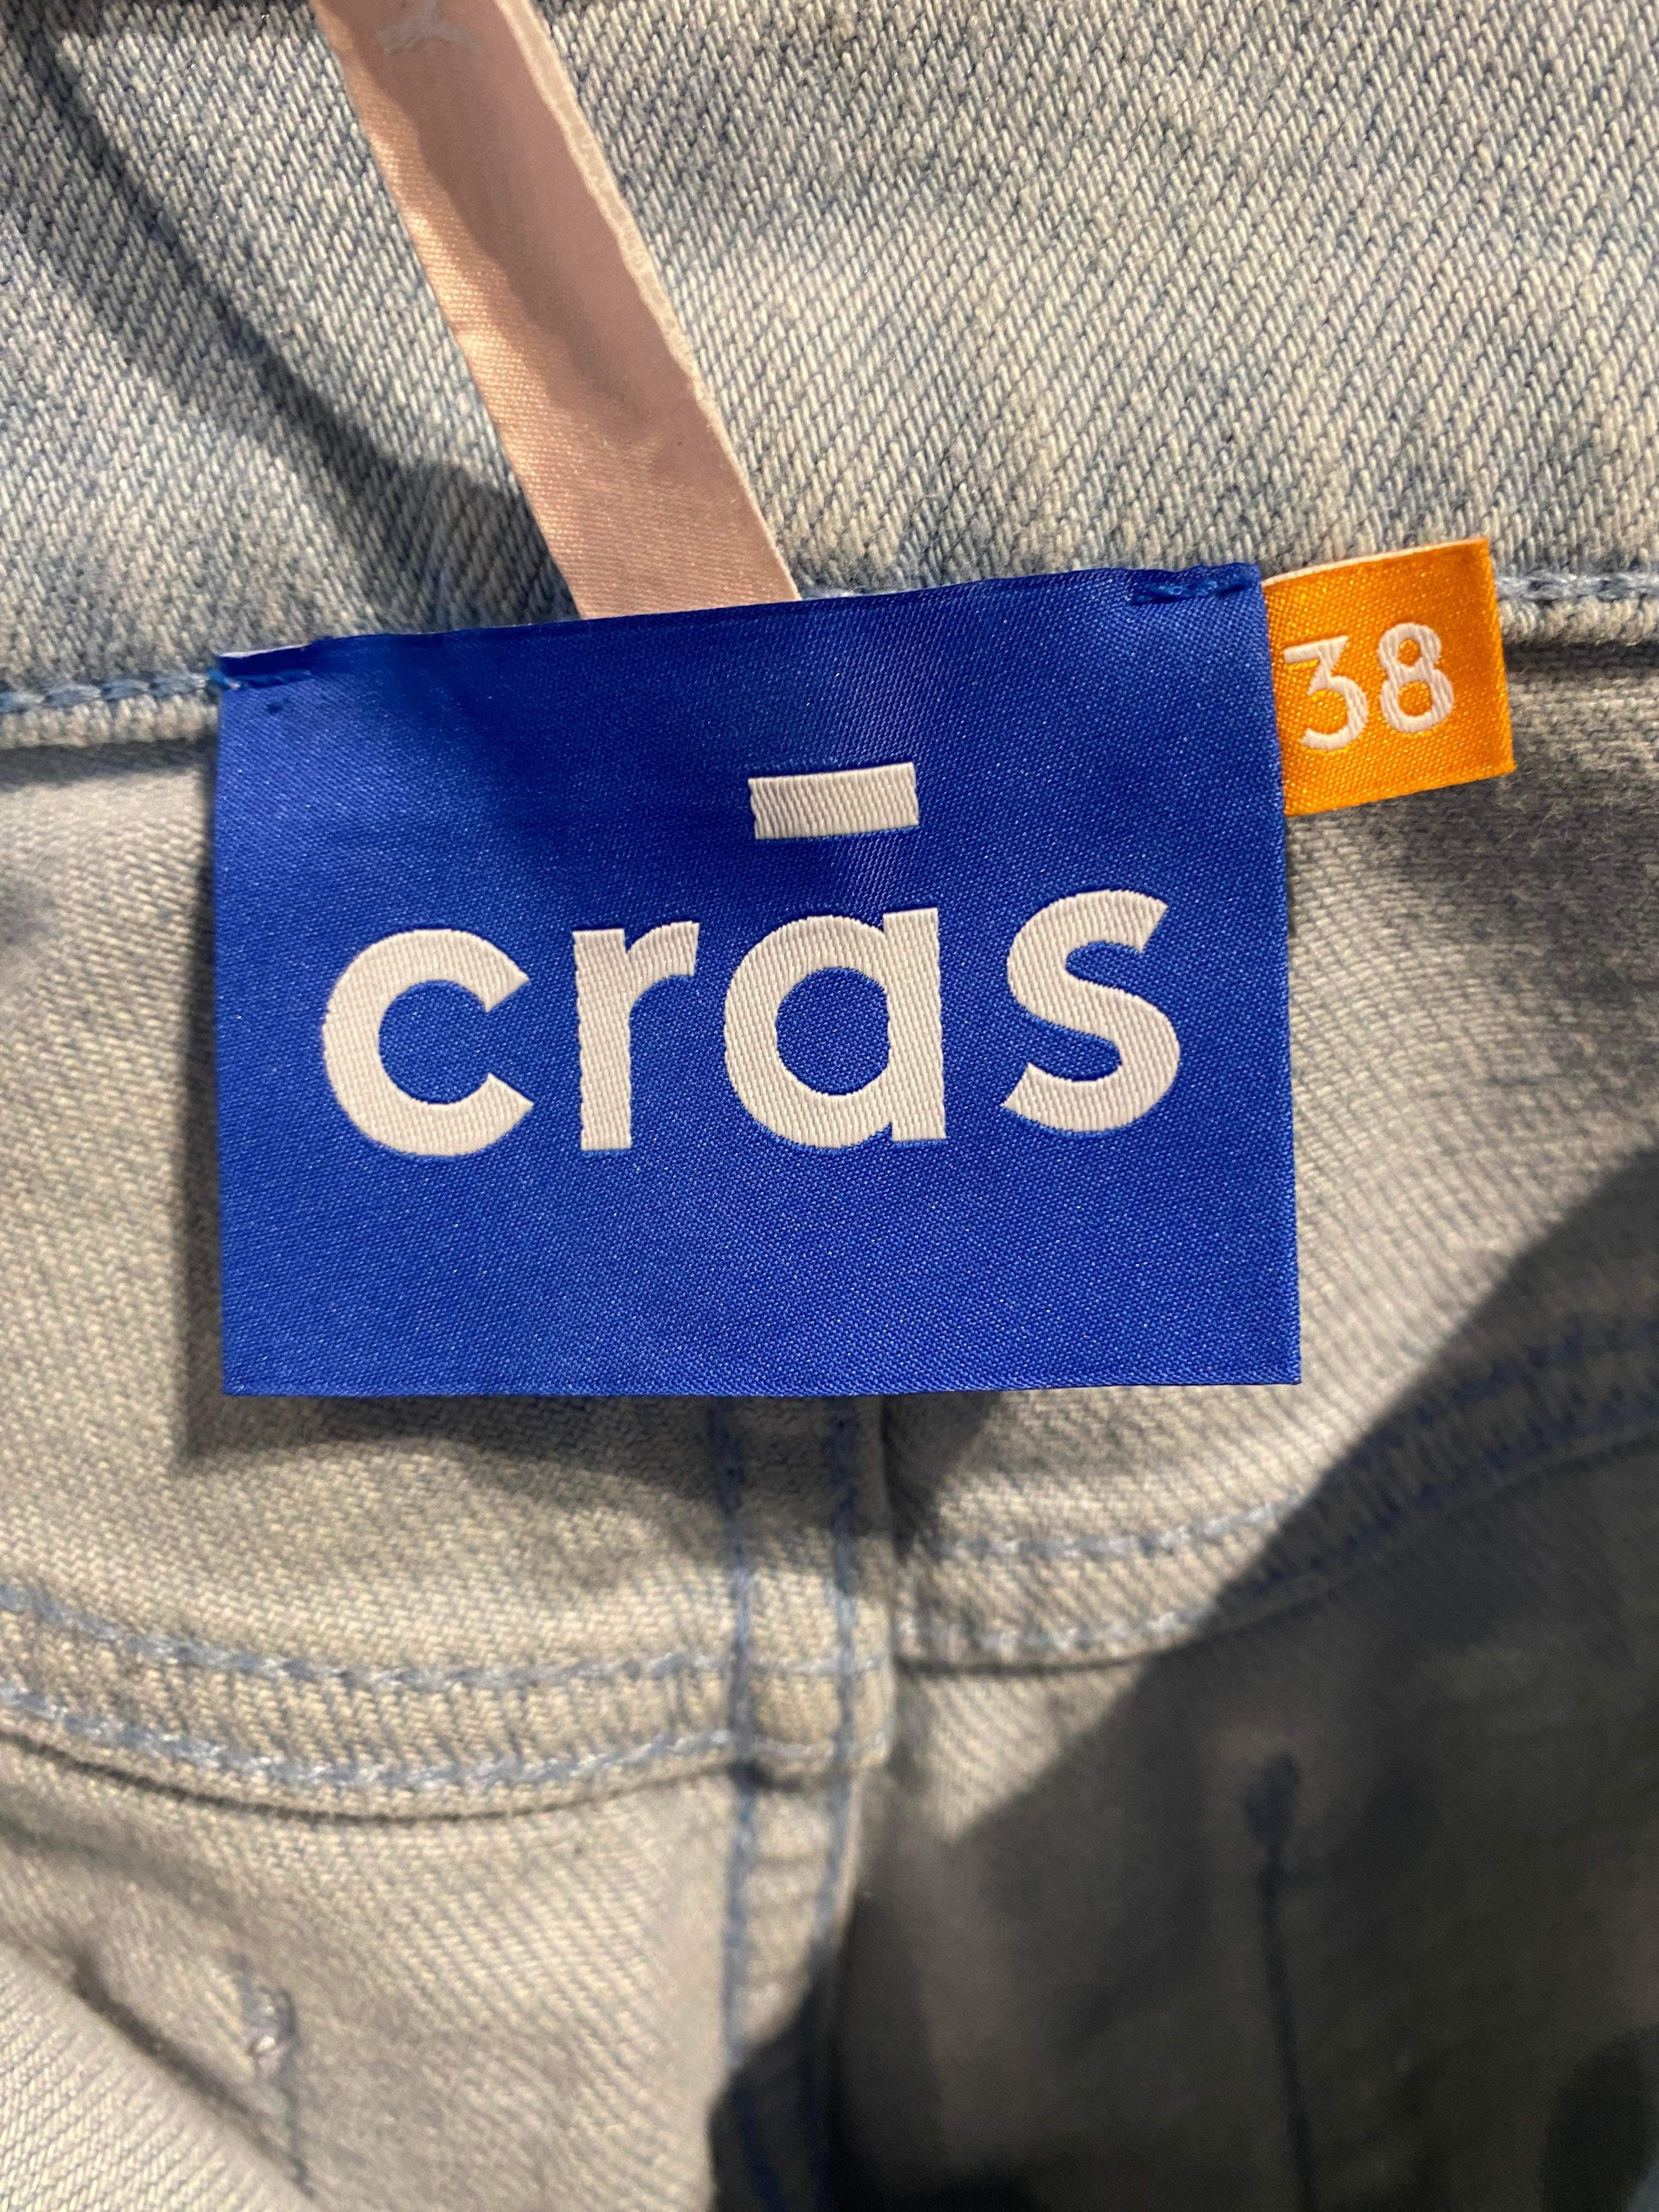 Cras - Jeans - Size: 38